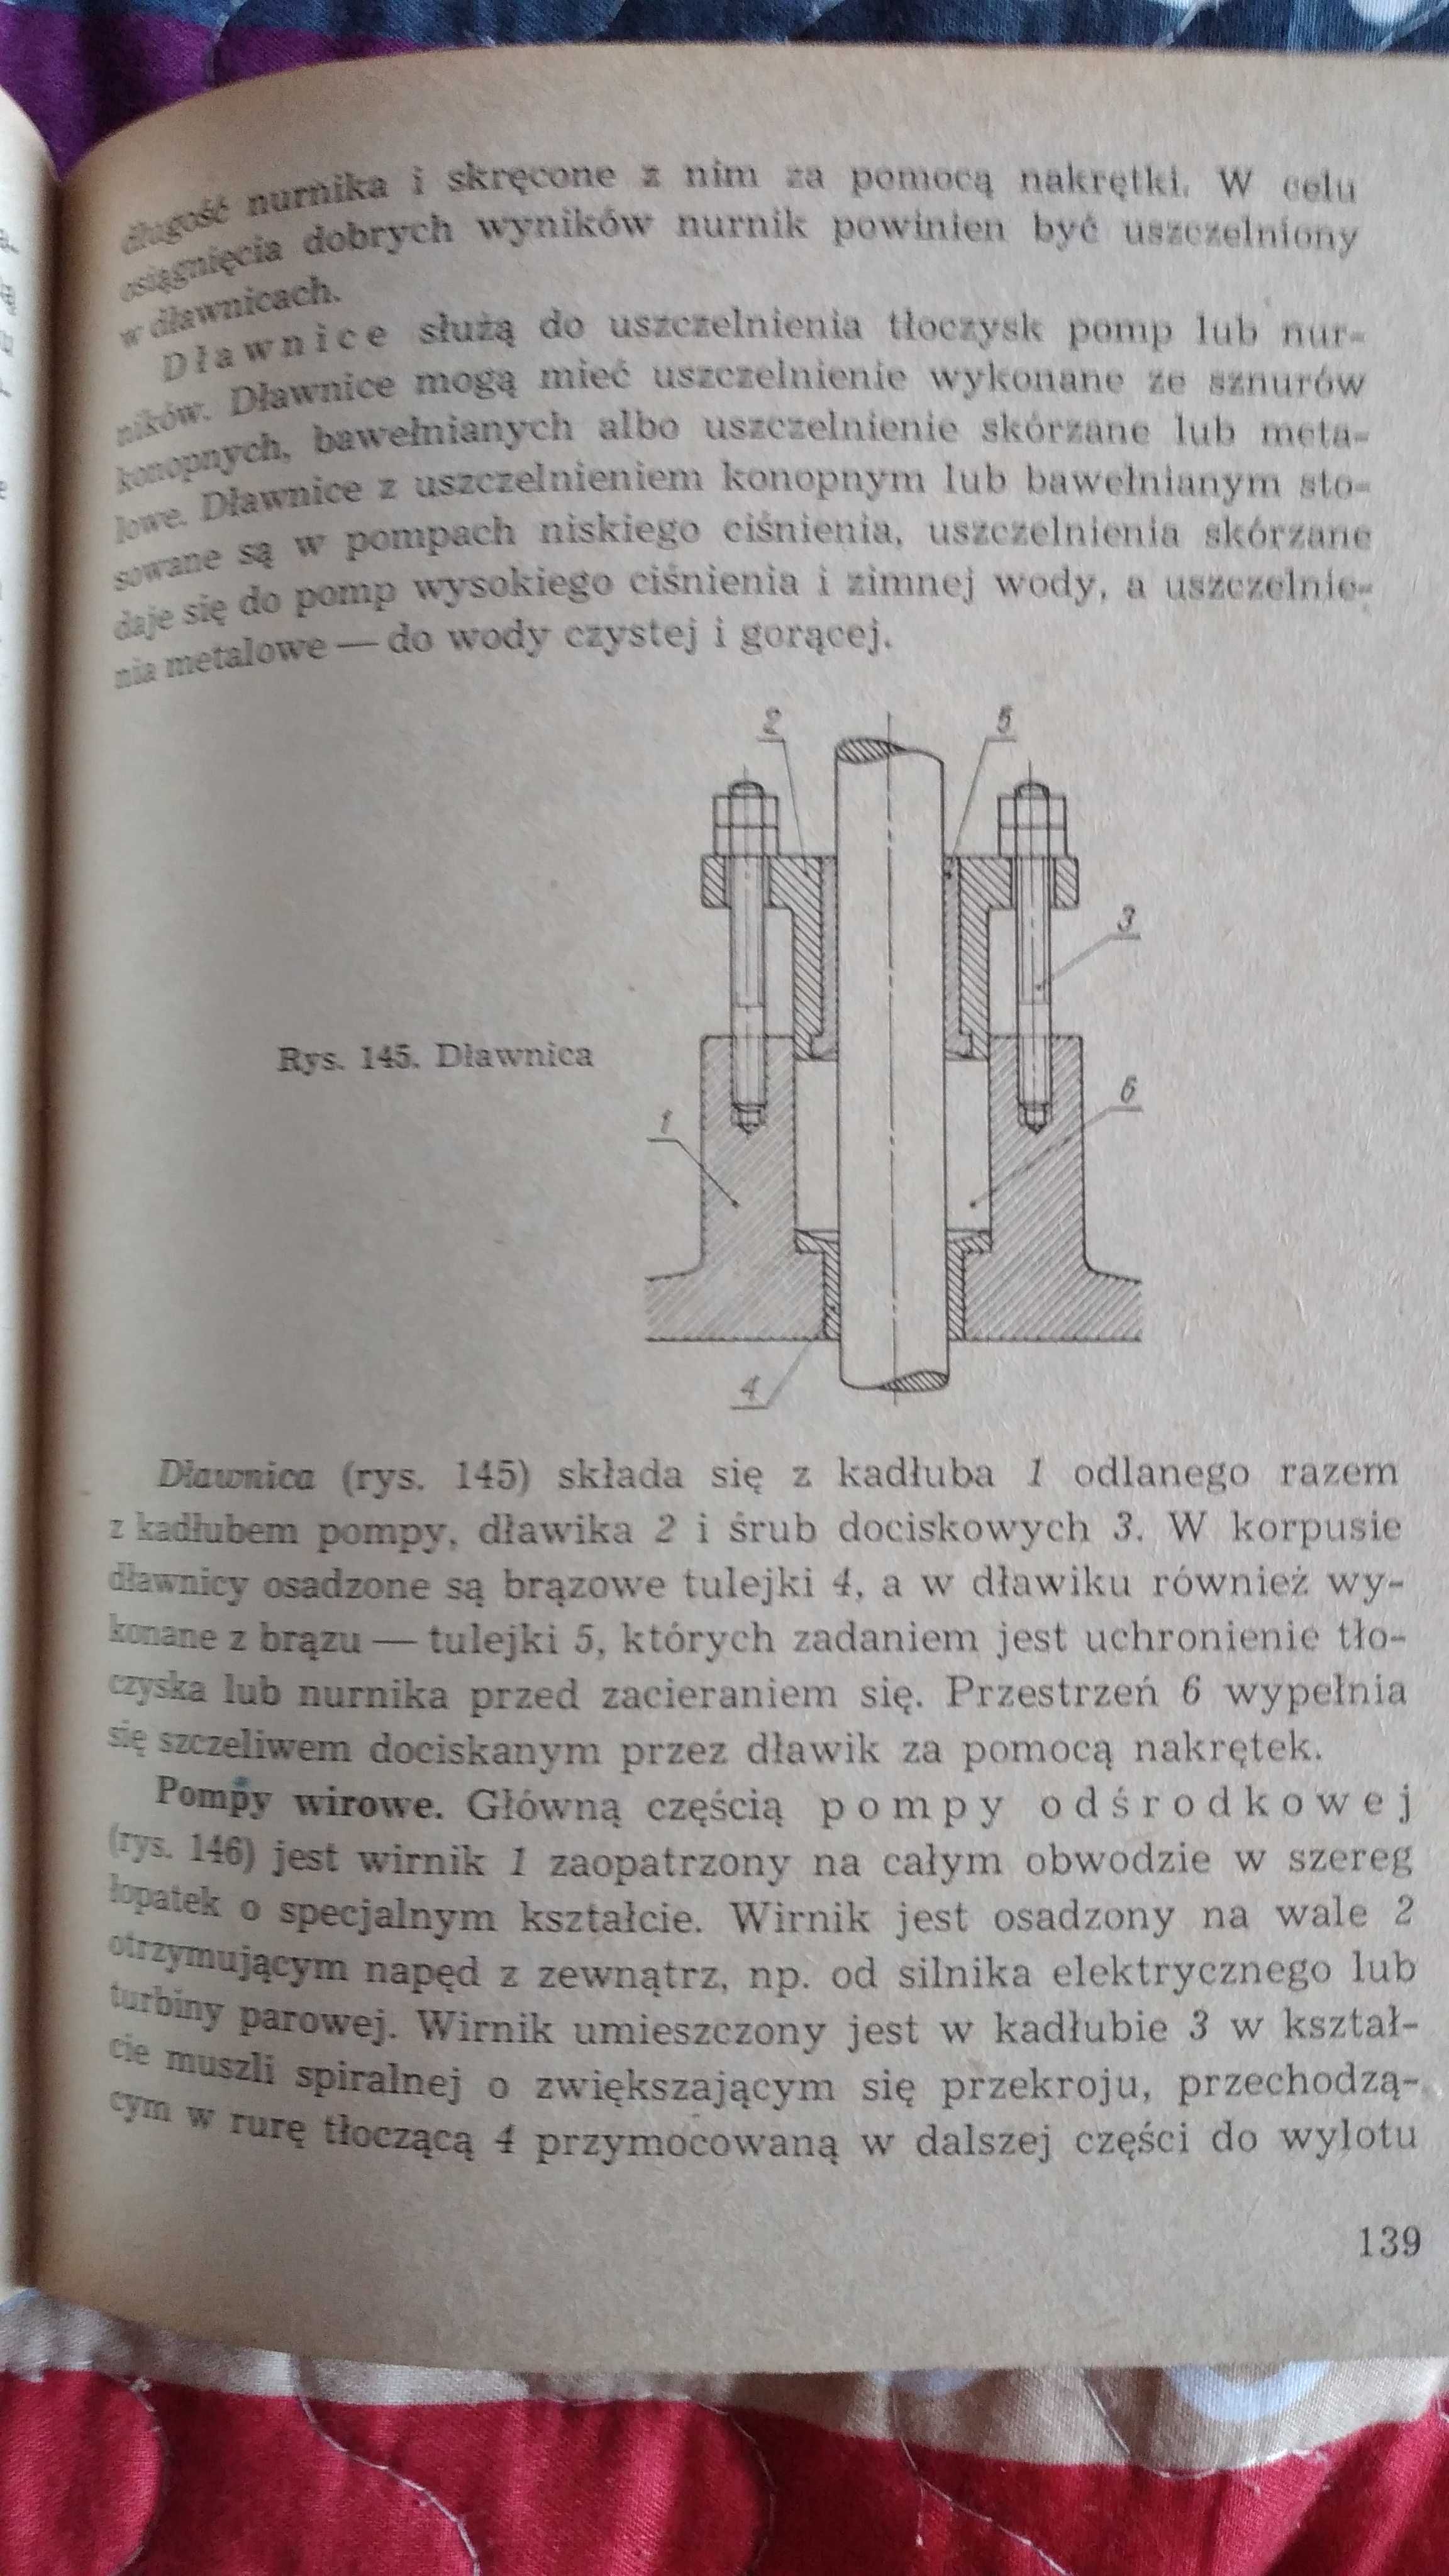 Fijałkowski A., Mac S. [1971] Maszynoznawstwo dla Z.S.Z. Mechanicznych